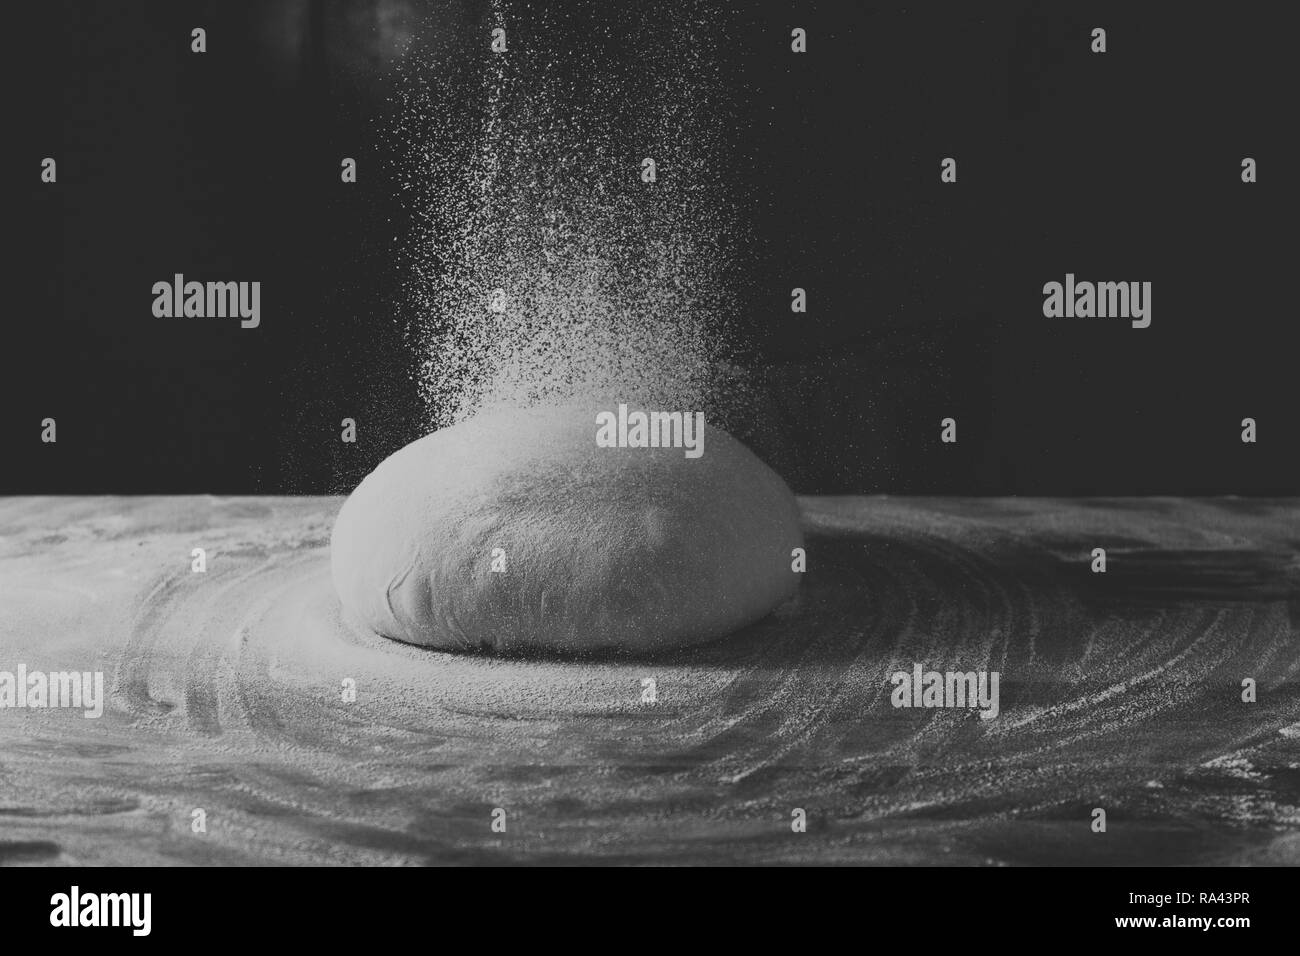 La pâte en forme de bol se trouve sur une table de cuisson en bois sombre sur un fond noir. Saupoudrée de farine. Vue de côté, photo horizontale Banque D'Images